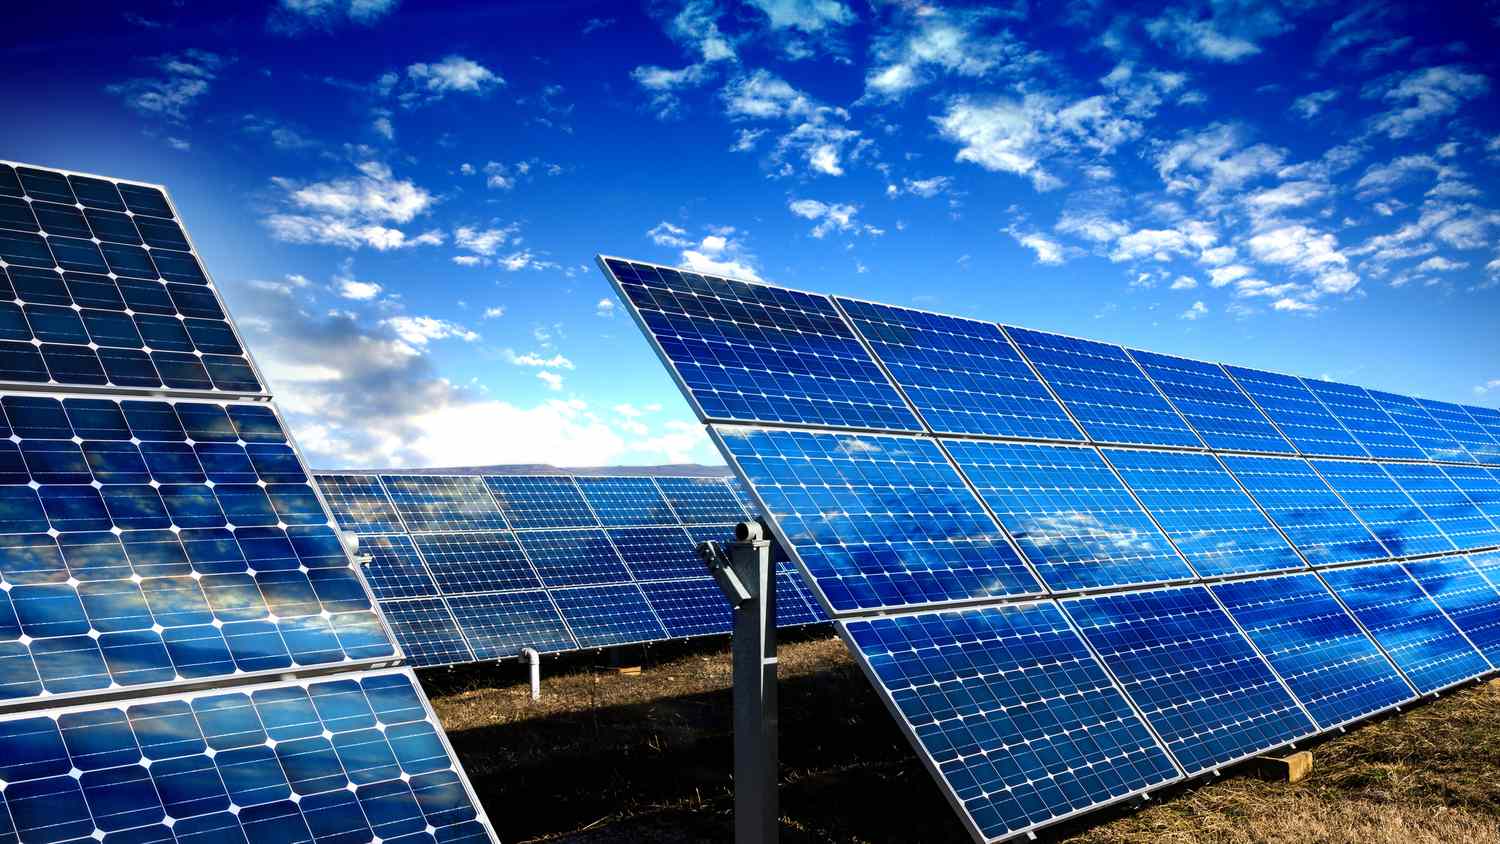 Panel Surya Merubah Energi Matahari Menjadi Energi Listrik